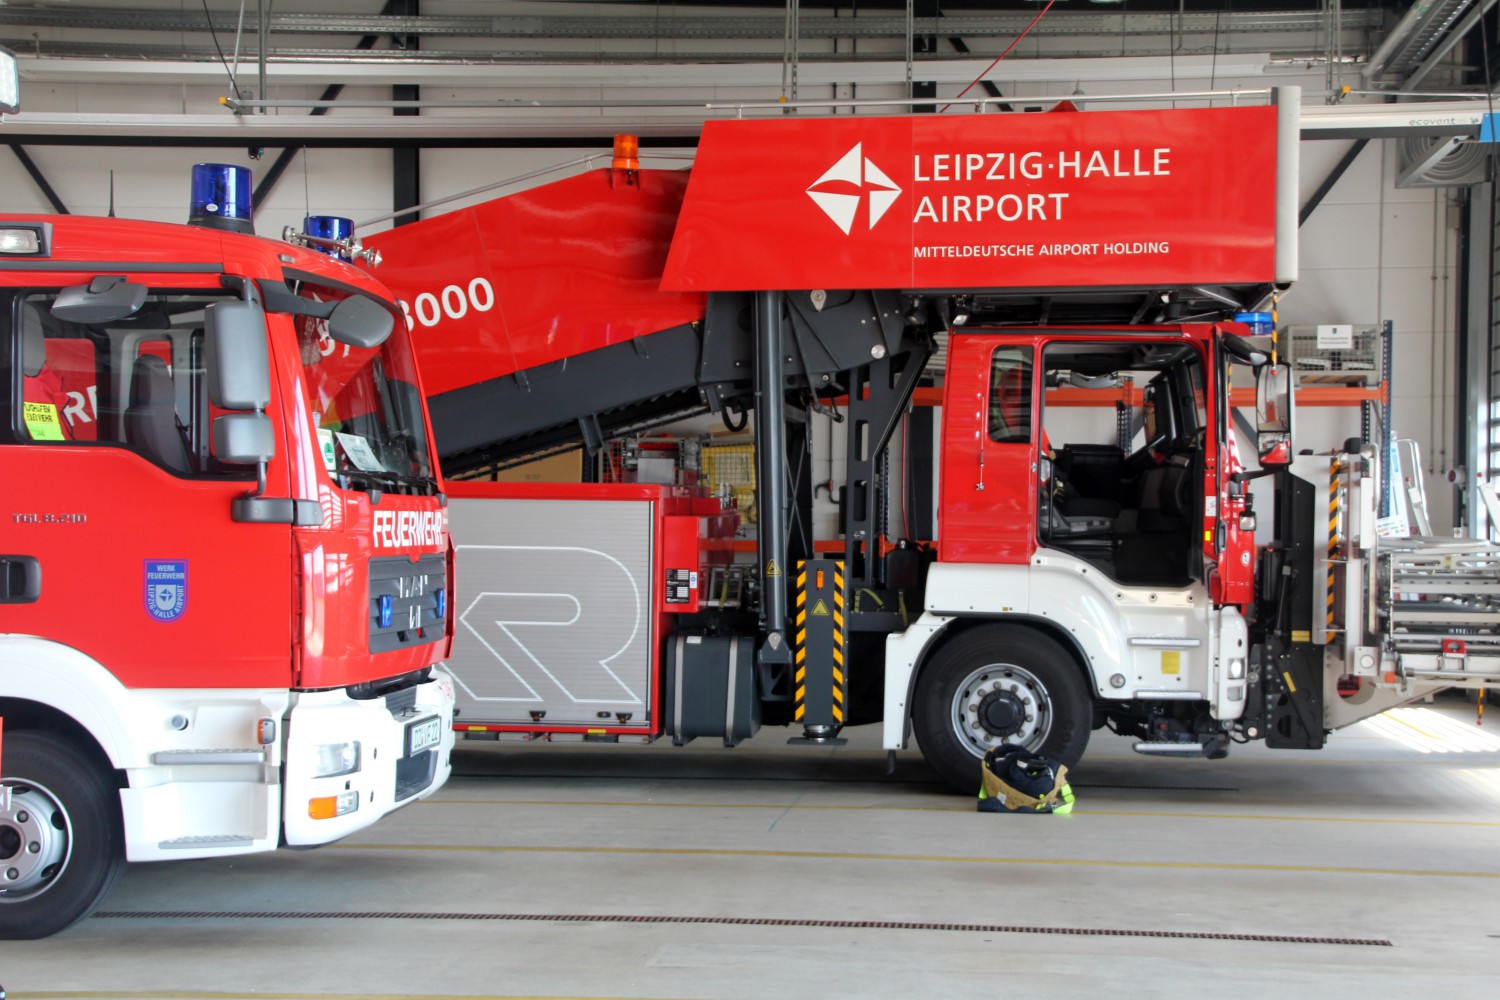 Foto: Seitliche Ansicht des vorderen Bereiches zweier Feuerwehrfahrzeuge in einer Halle des Flughafen Leipzig.